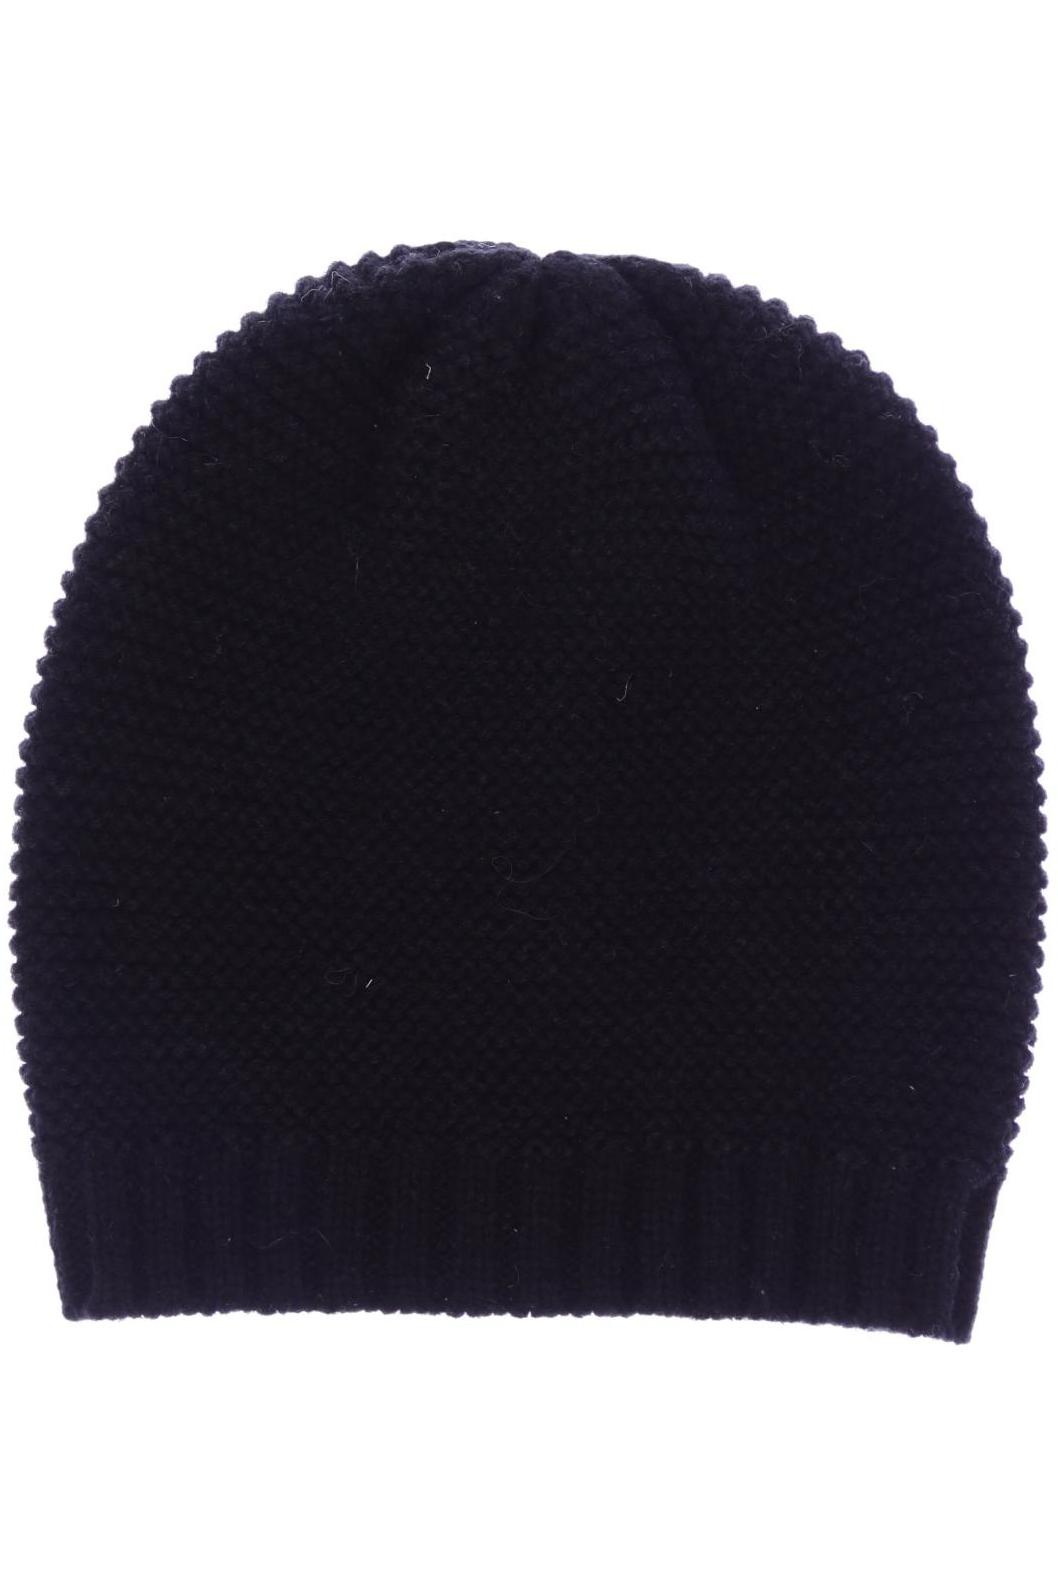 Stefanel Damen Hut/Mütze, schwarz, Gr. uni von Stefanel